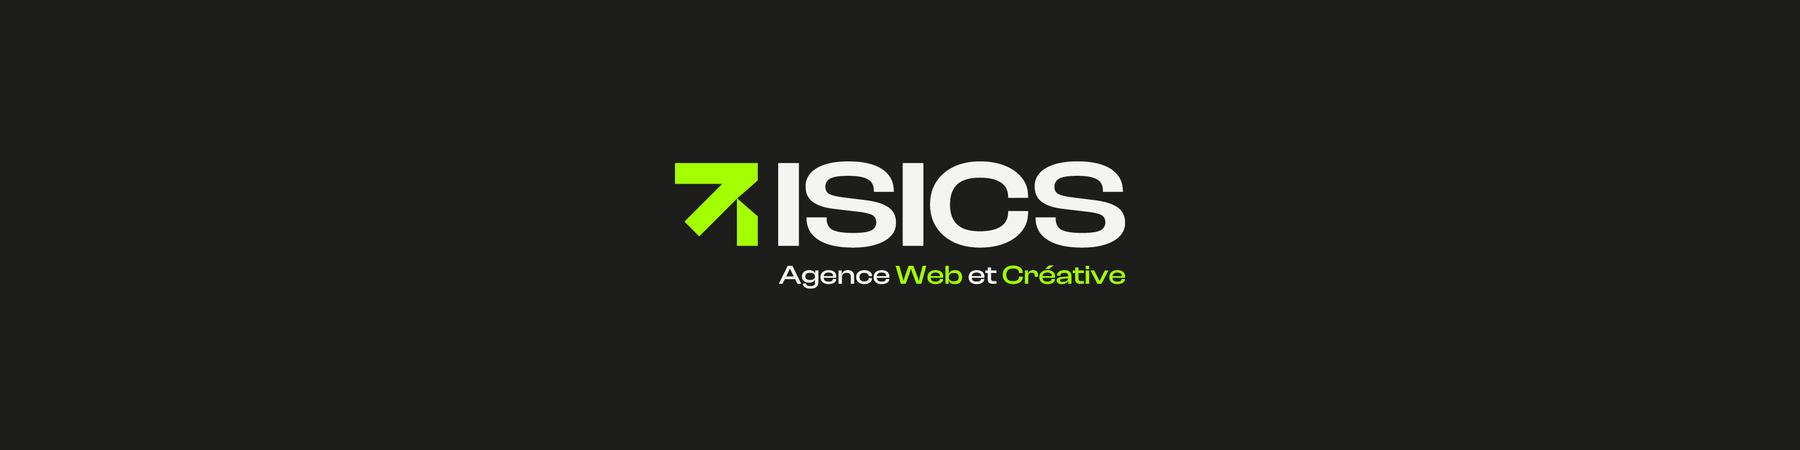 Nouveau logo de l'agence ISICS avec baseline